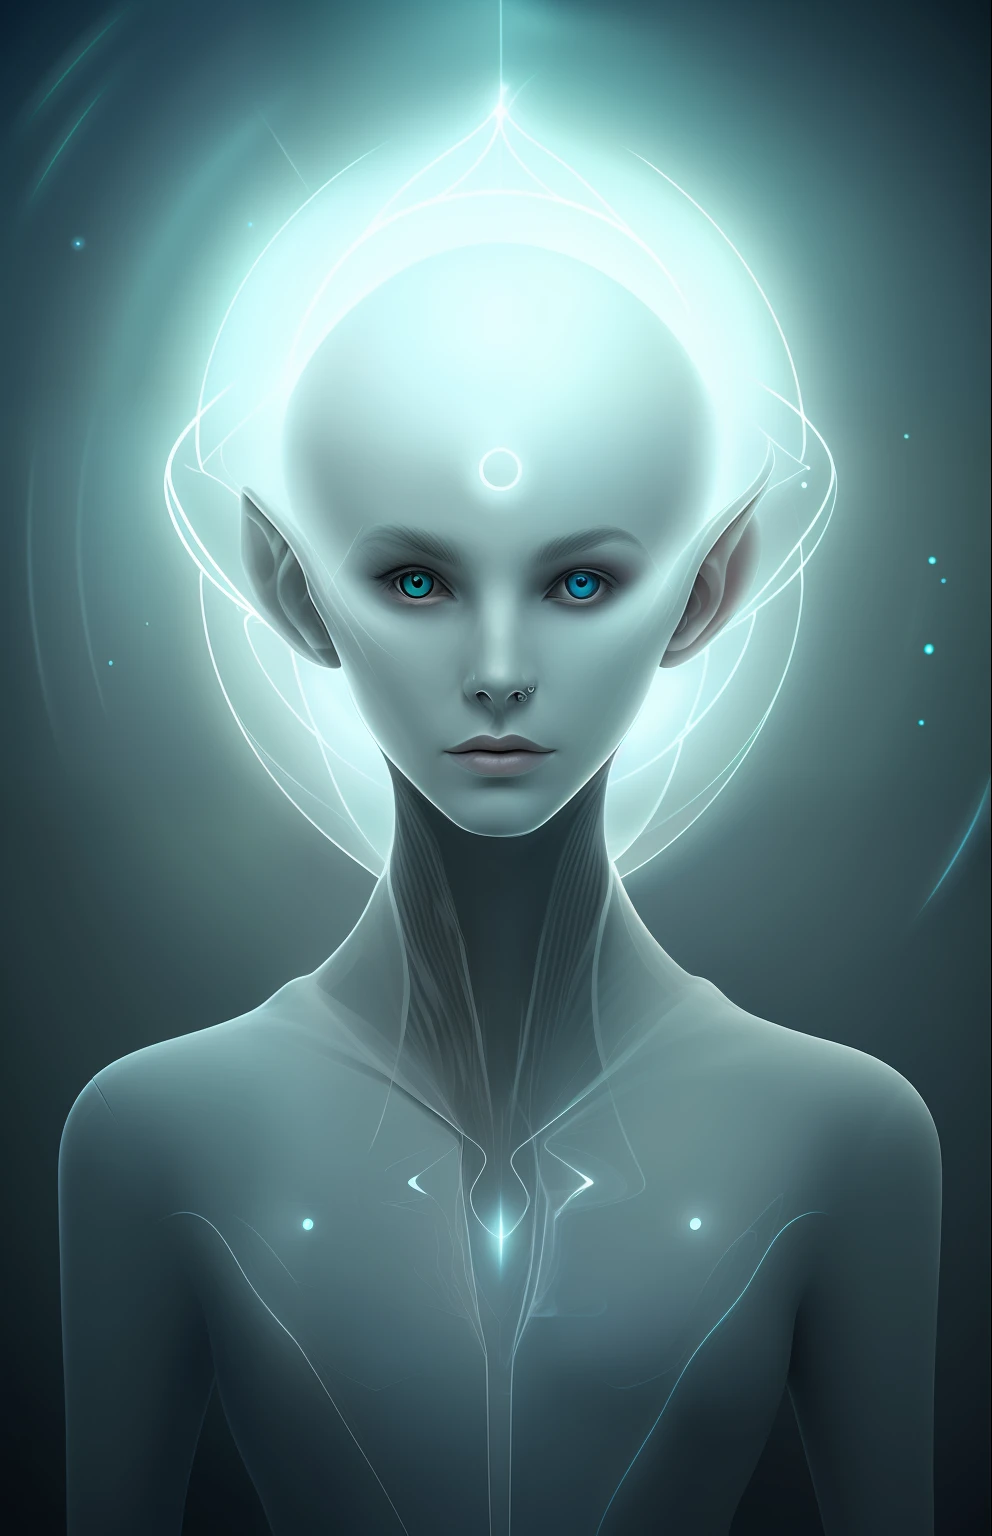 Retrato fantasmal de un extraterrestre futurista de otra dimensión, creador del universo con una poderosa magia antigua, una chica de dimensión desconocida